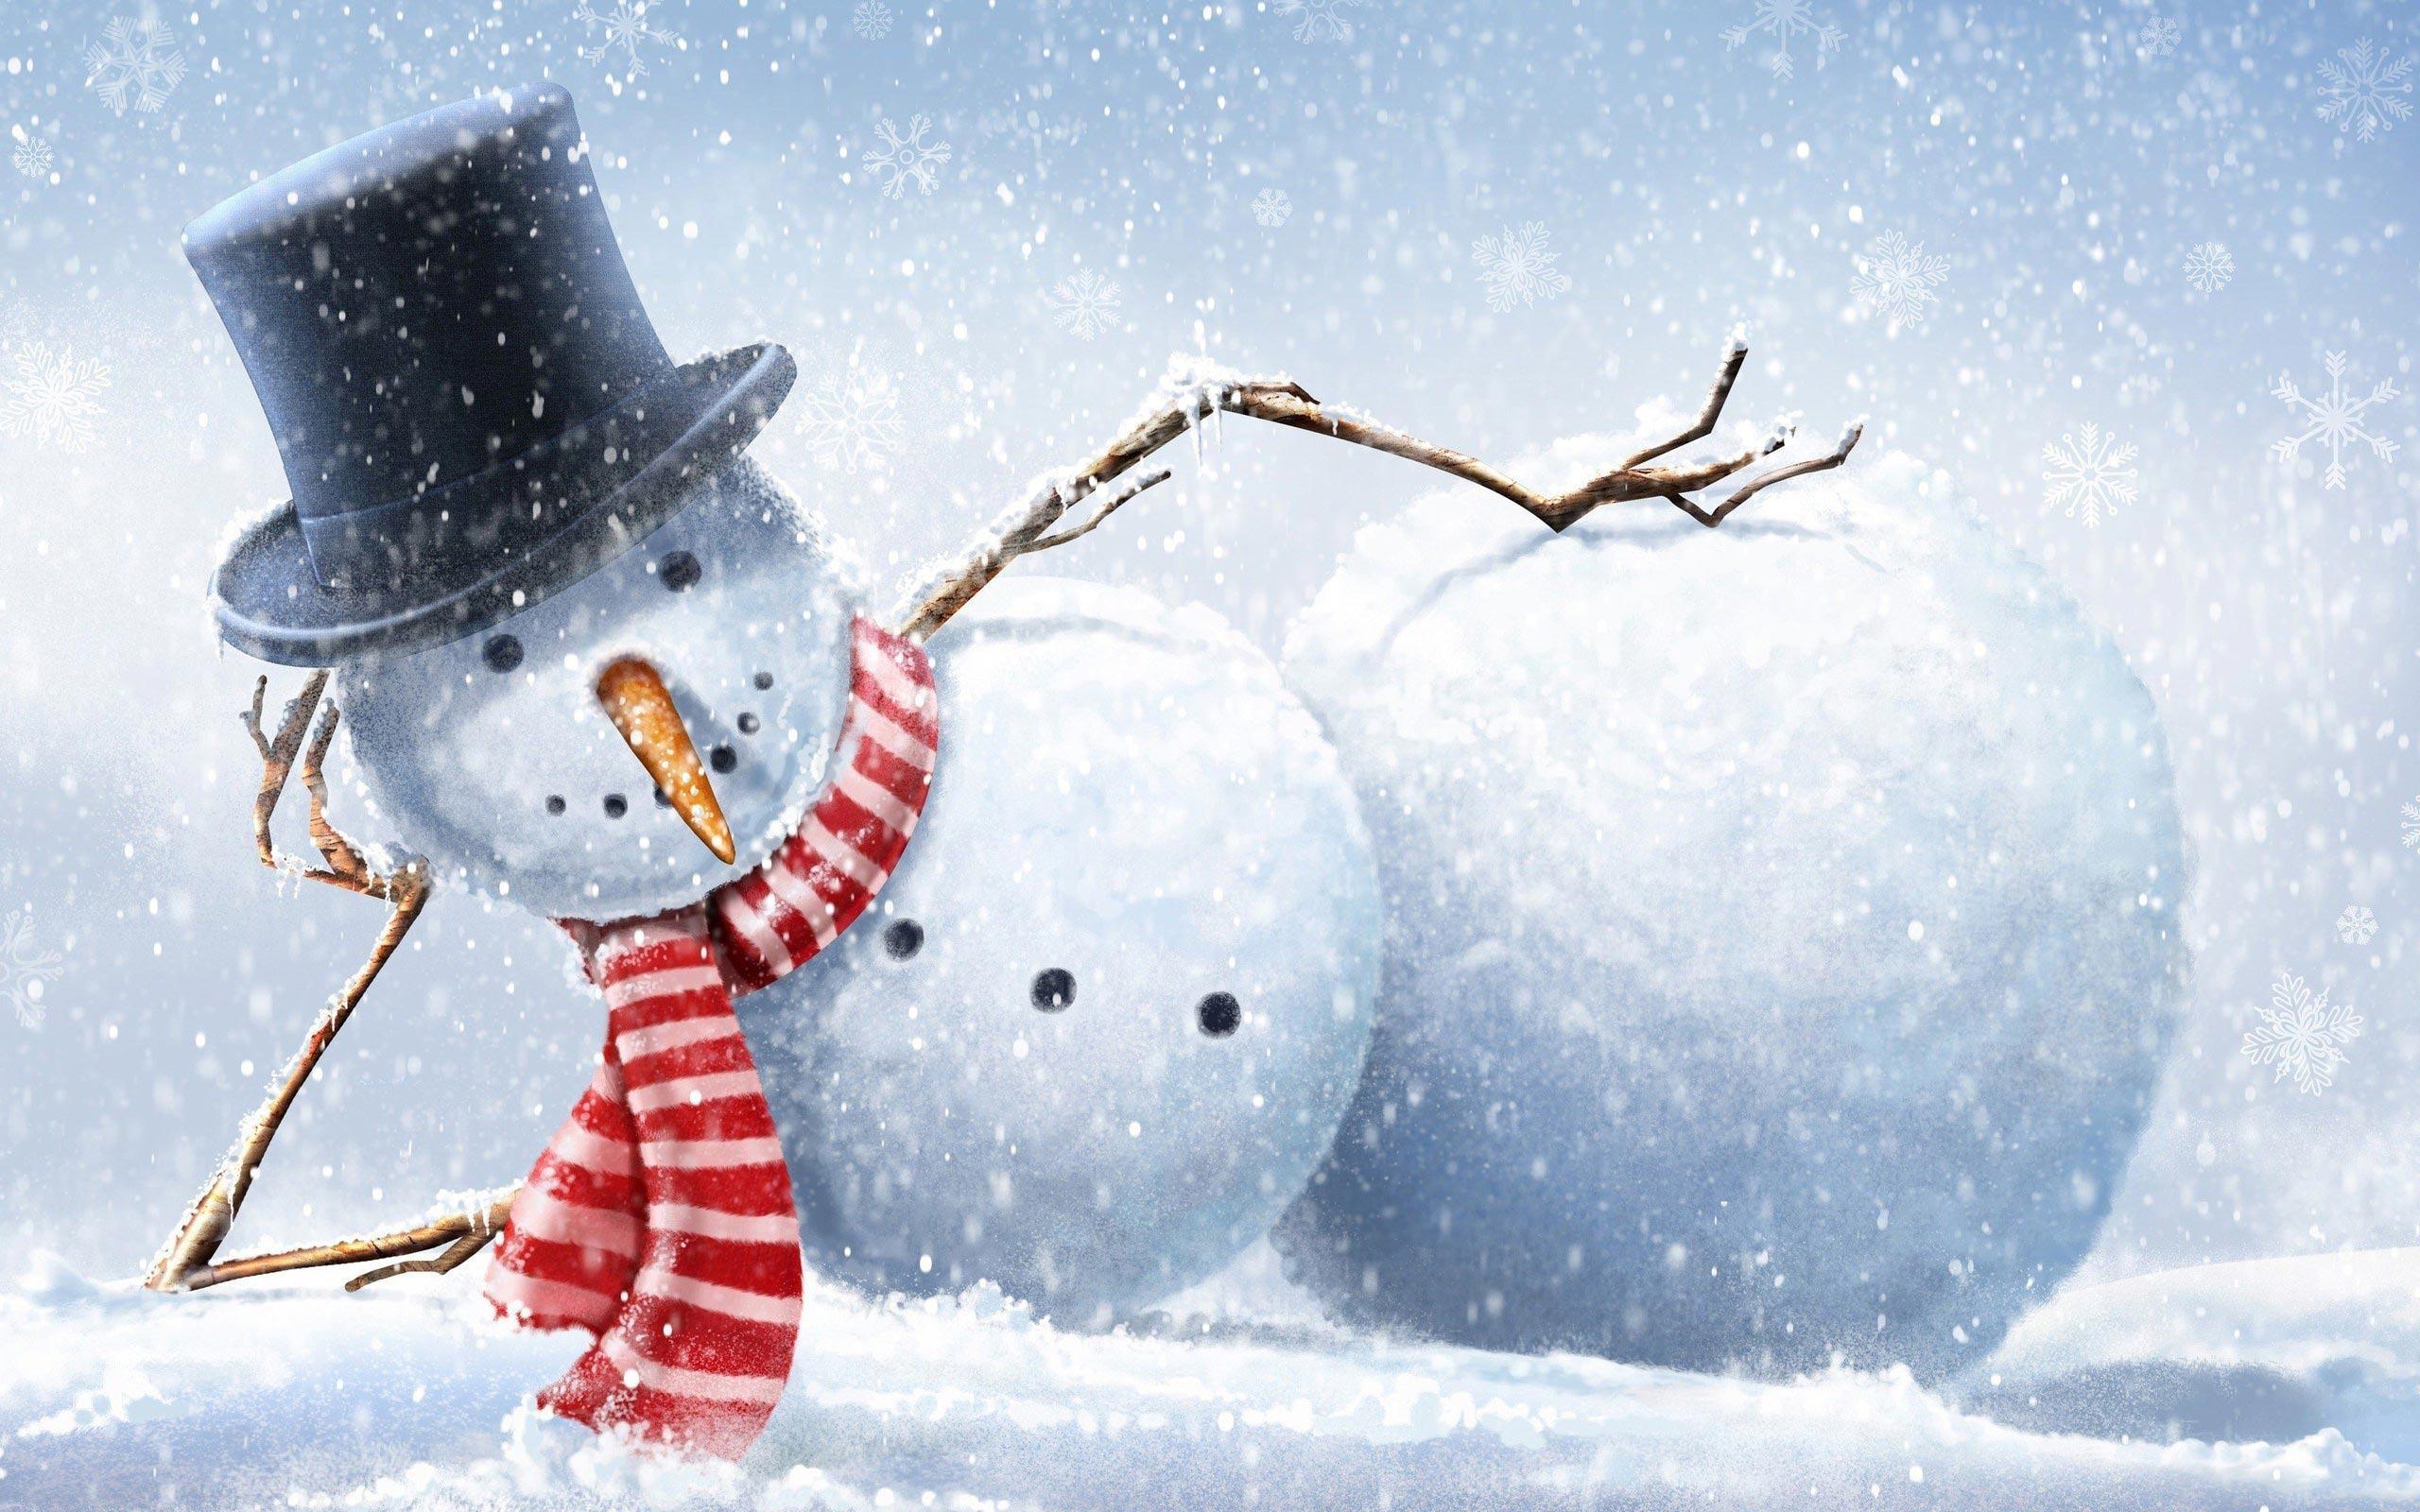 Wallpaper For > Winter Snowman Wallpaper